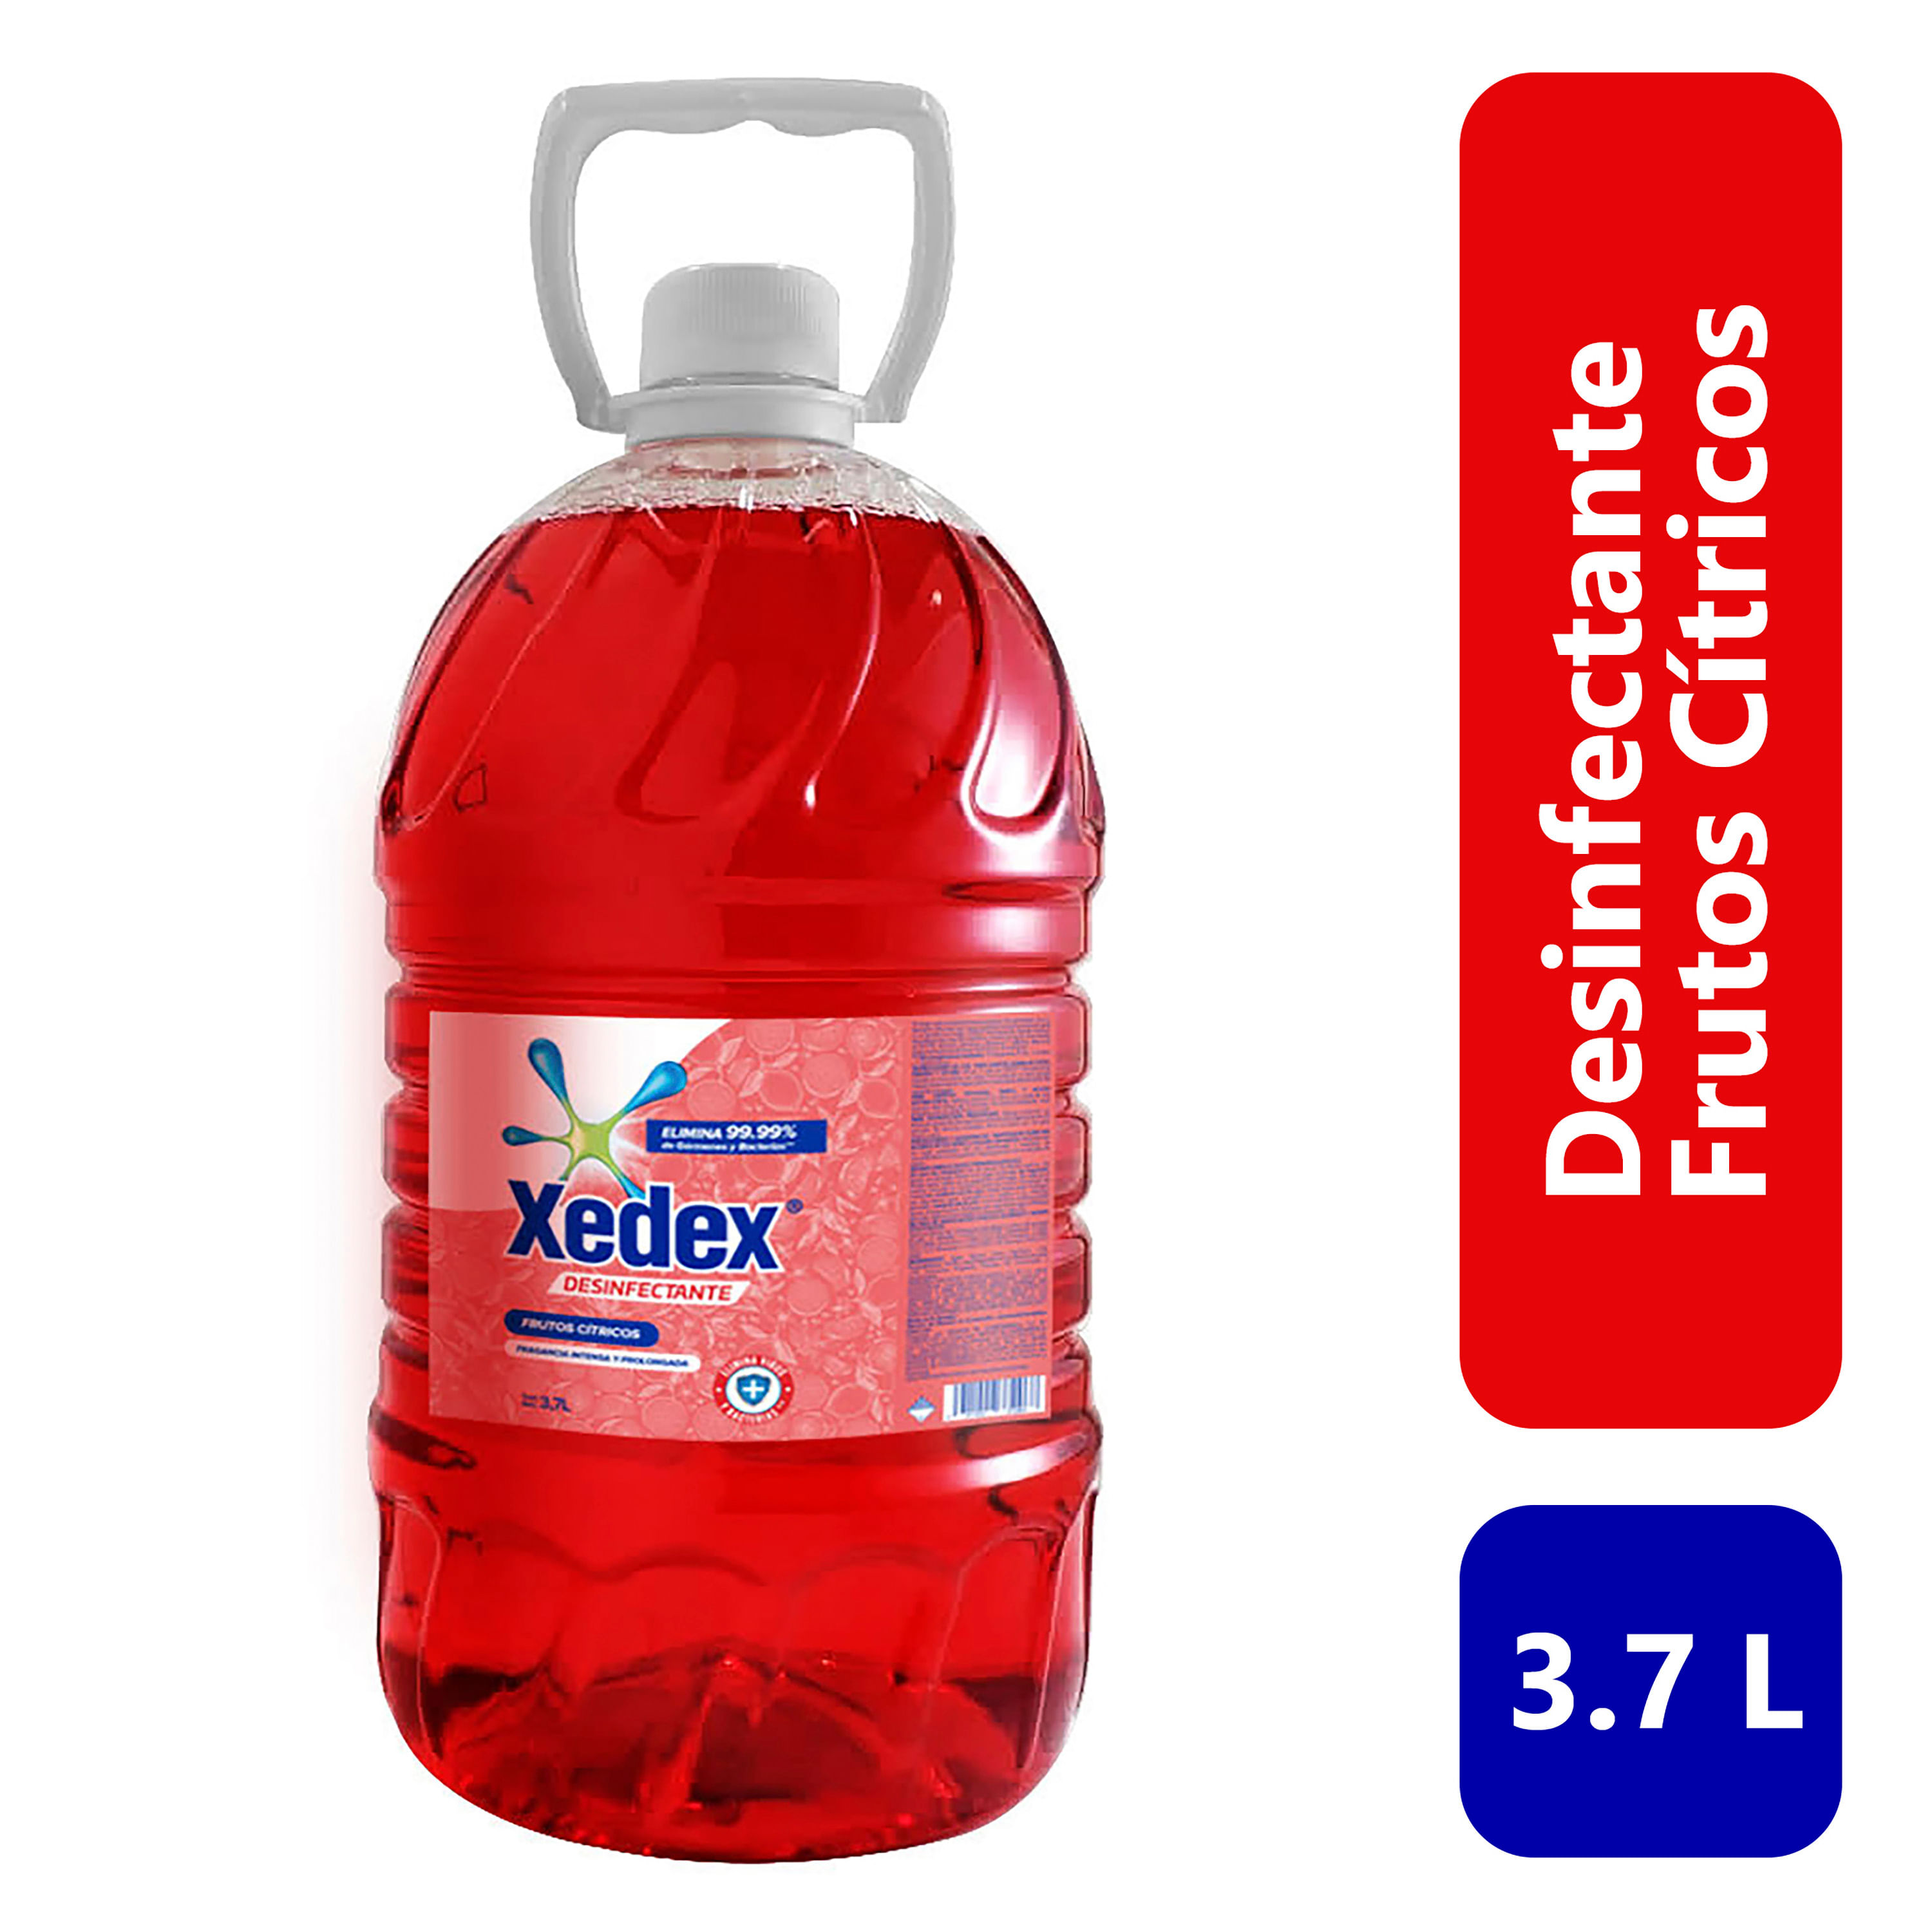 Limpiador líquido Windex Para Vidrios - 500ml